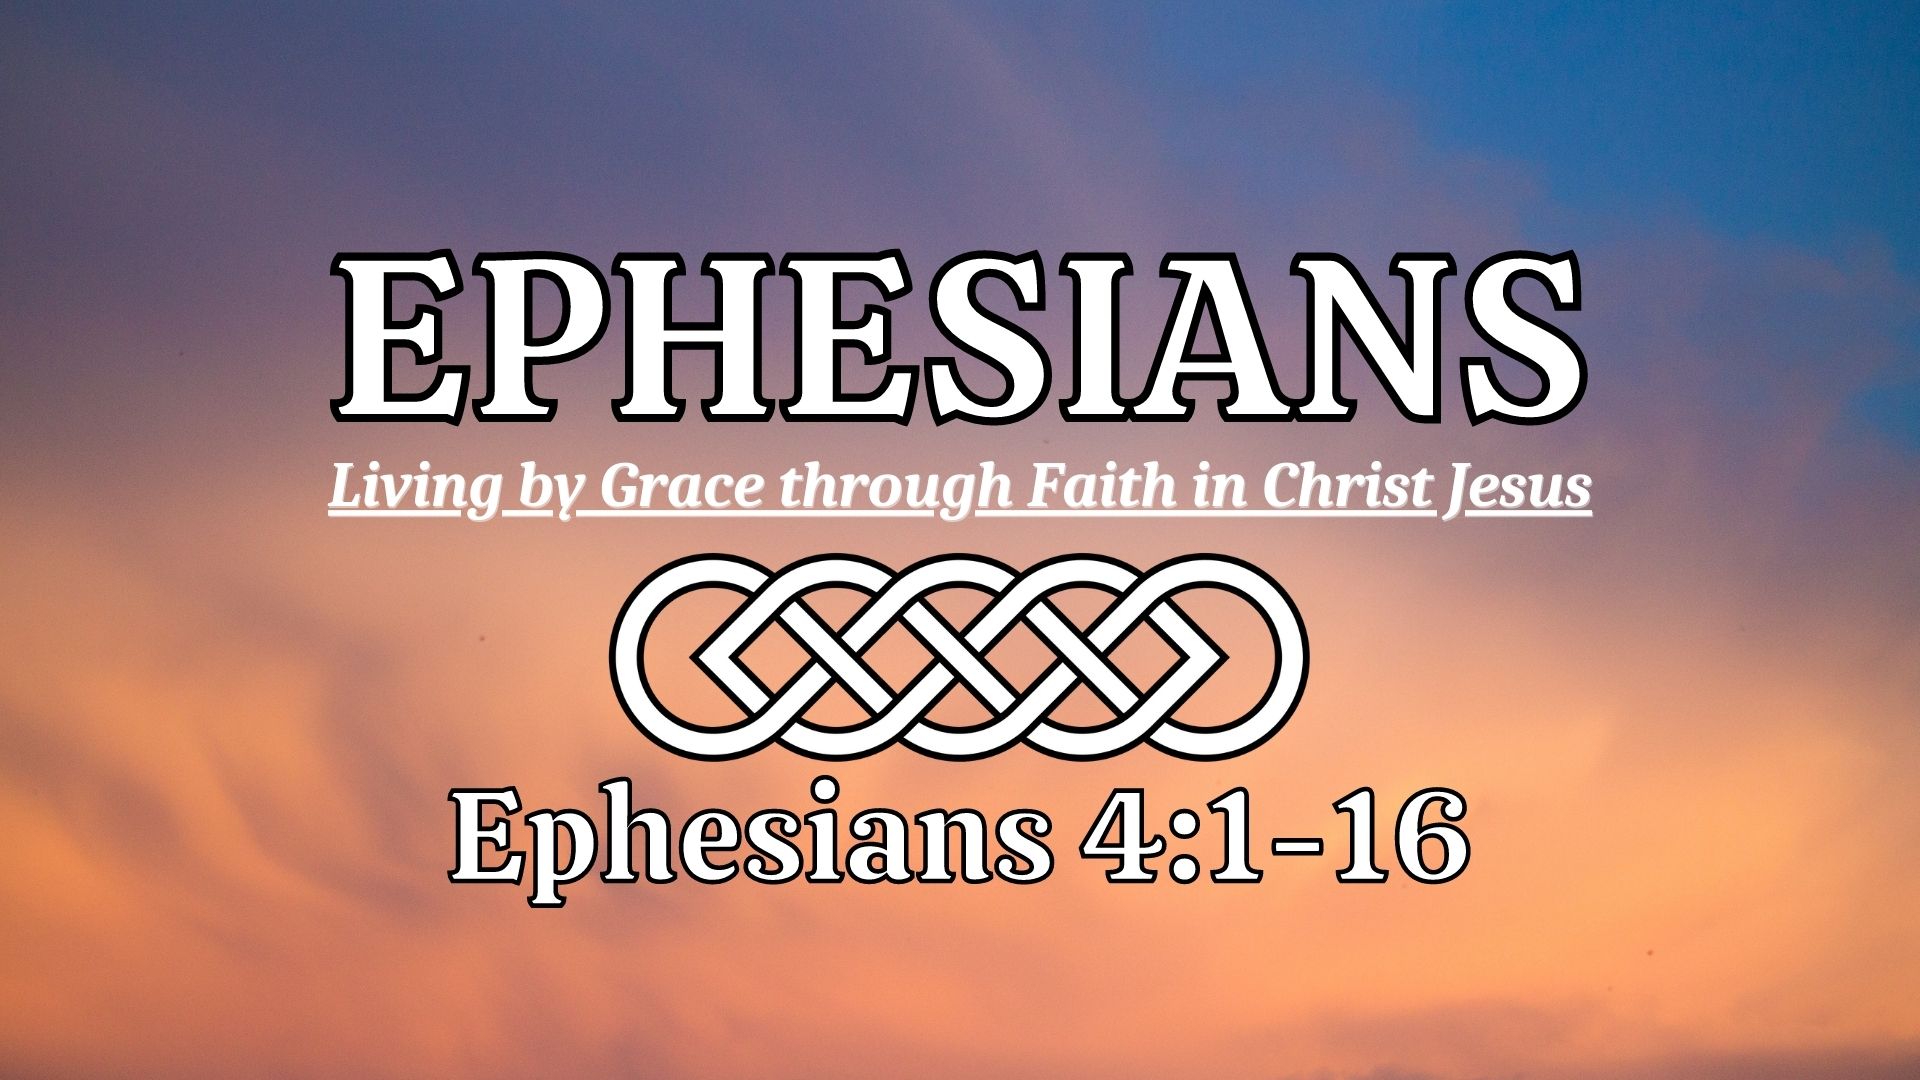 Ephesians 4:1-16 Image